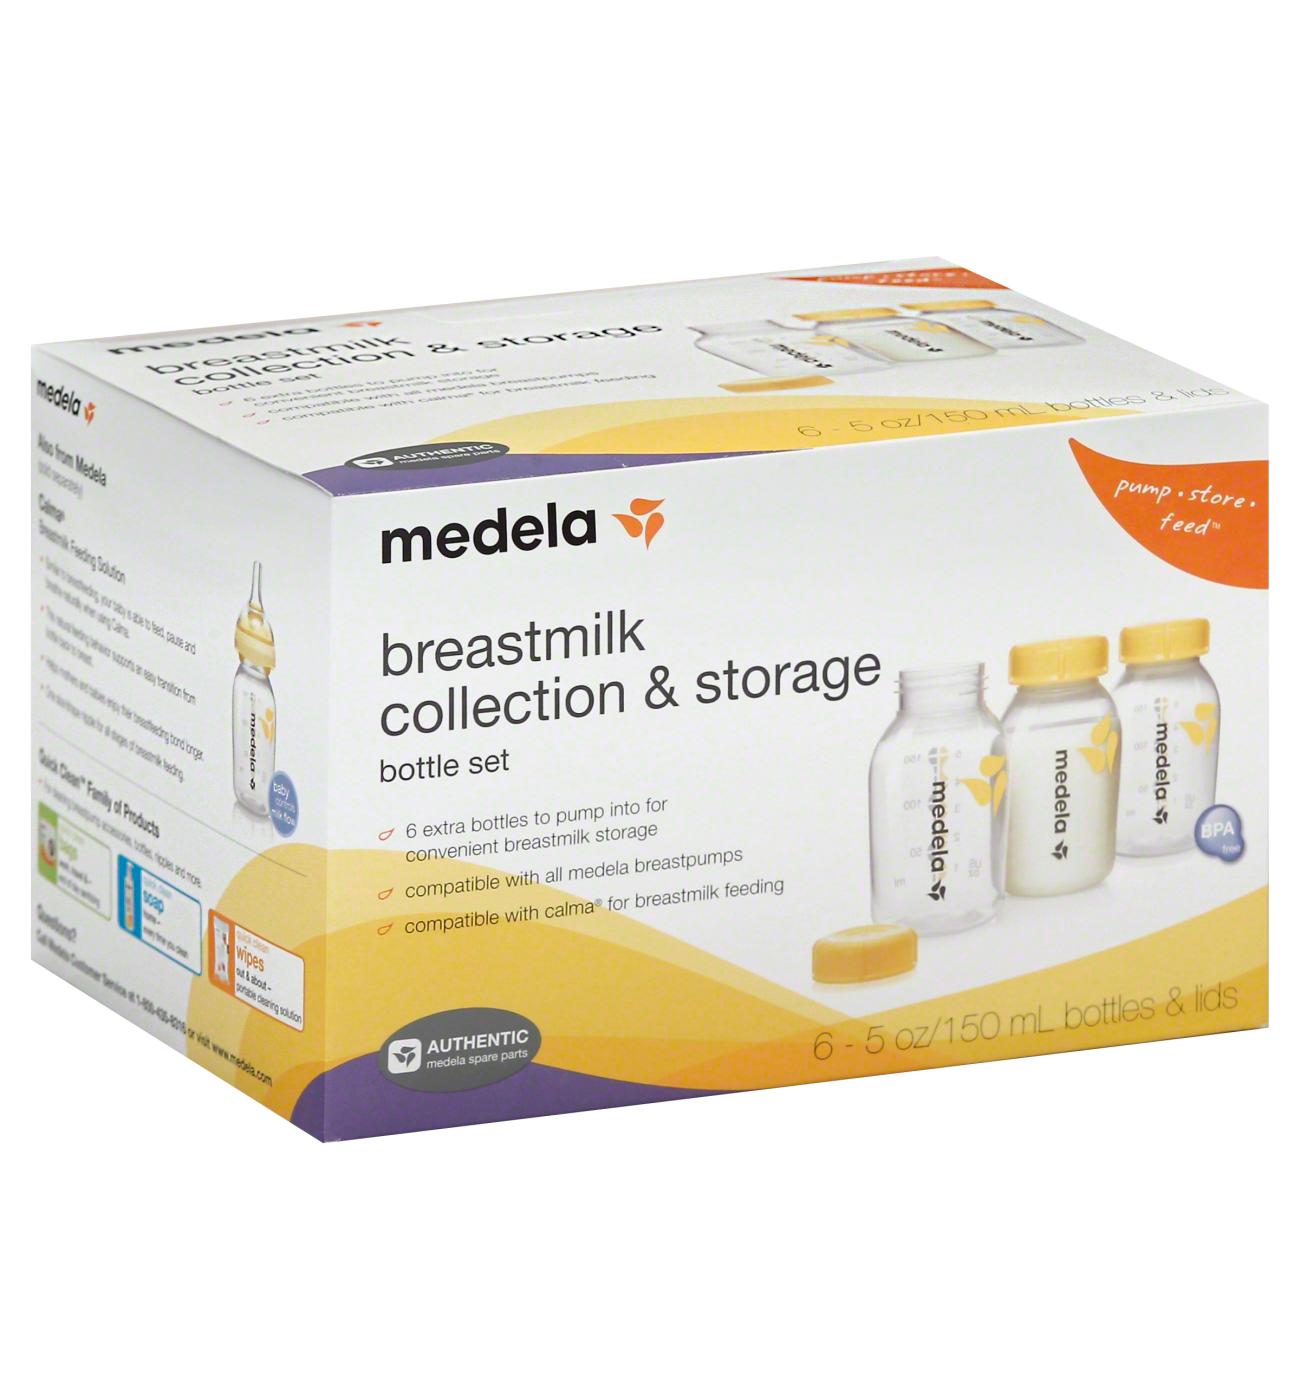 Medela Breastmilk Bottle Spare Parts 